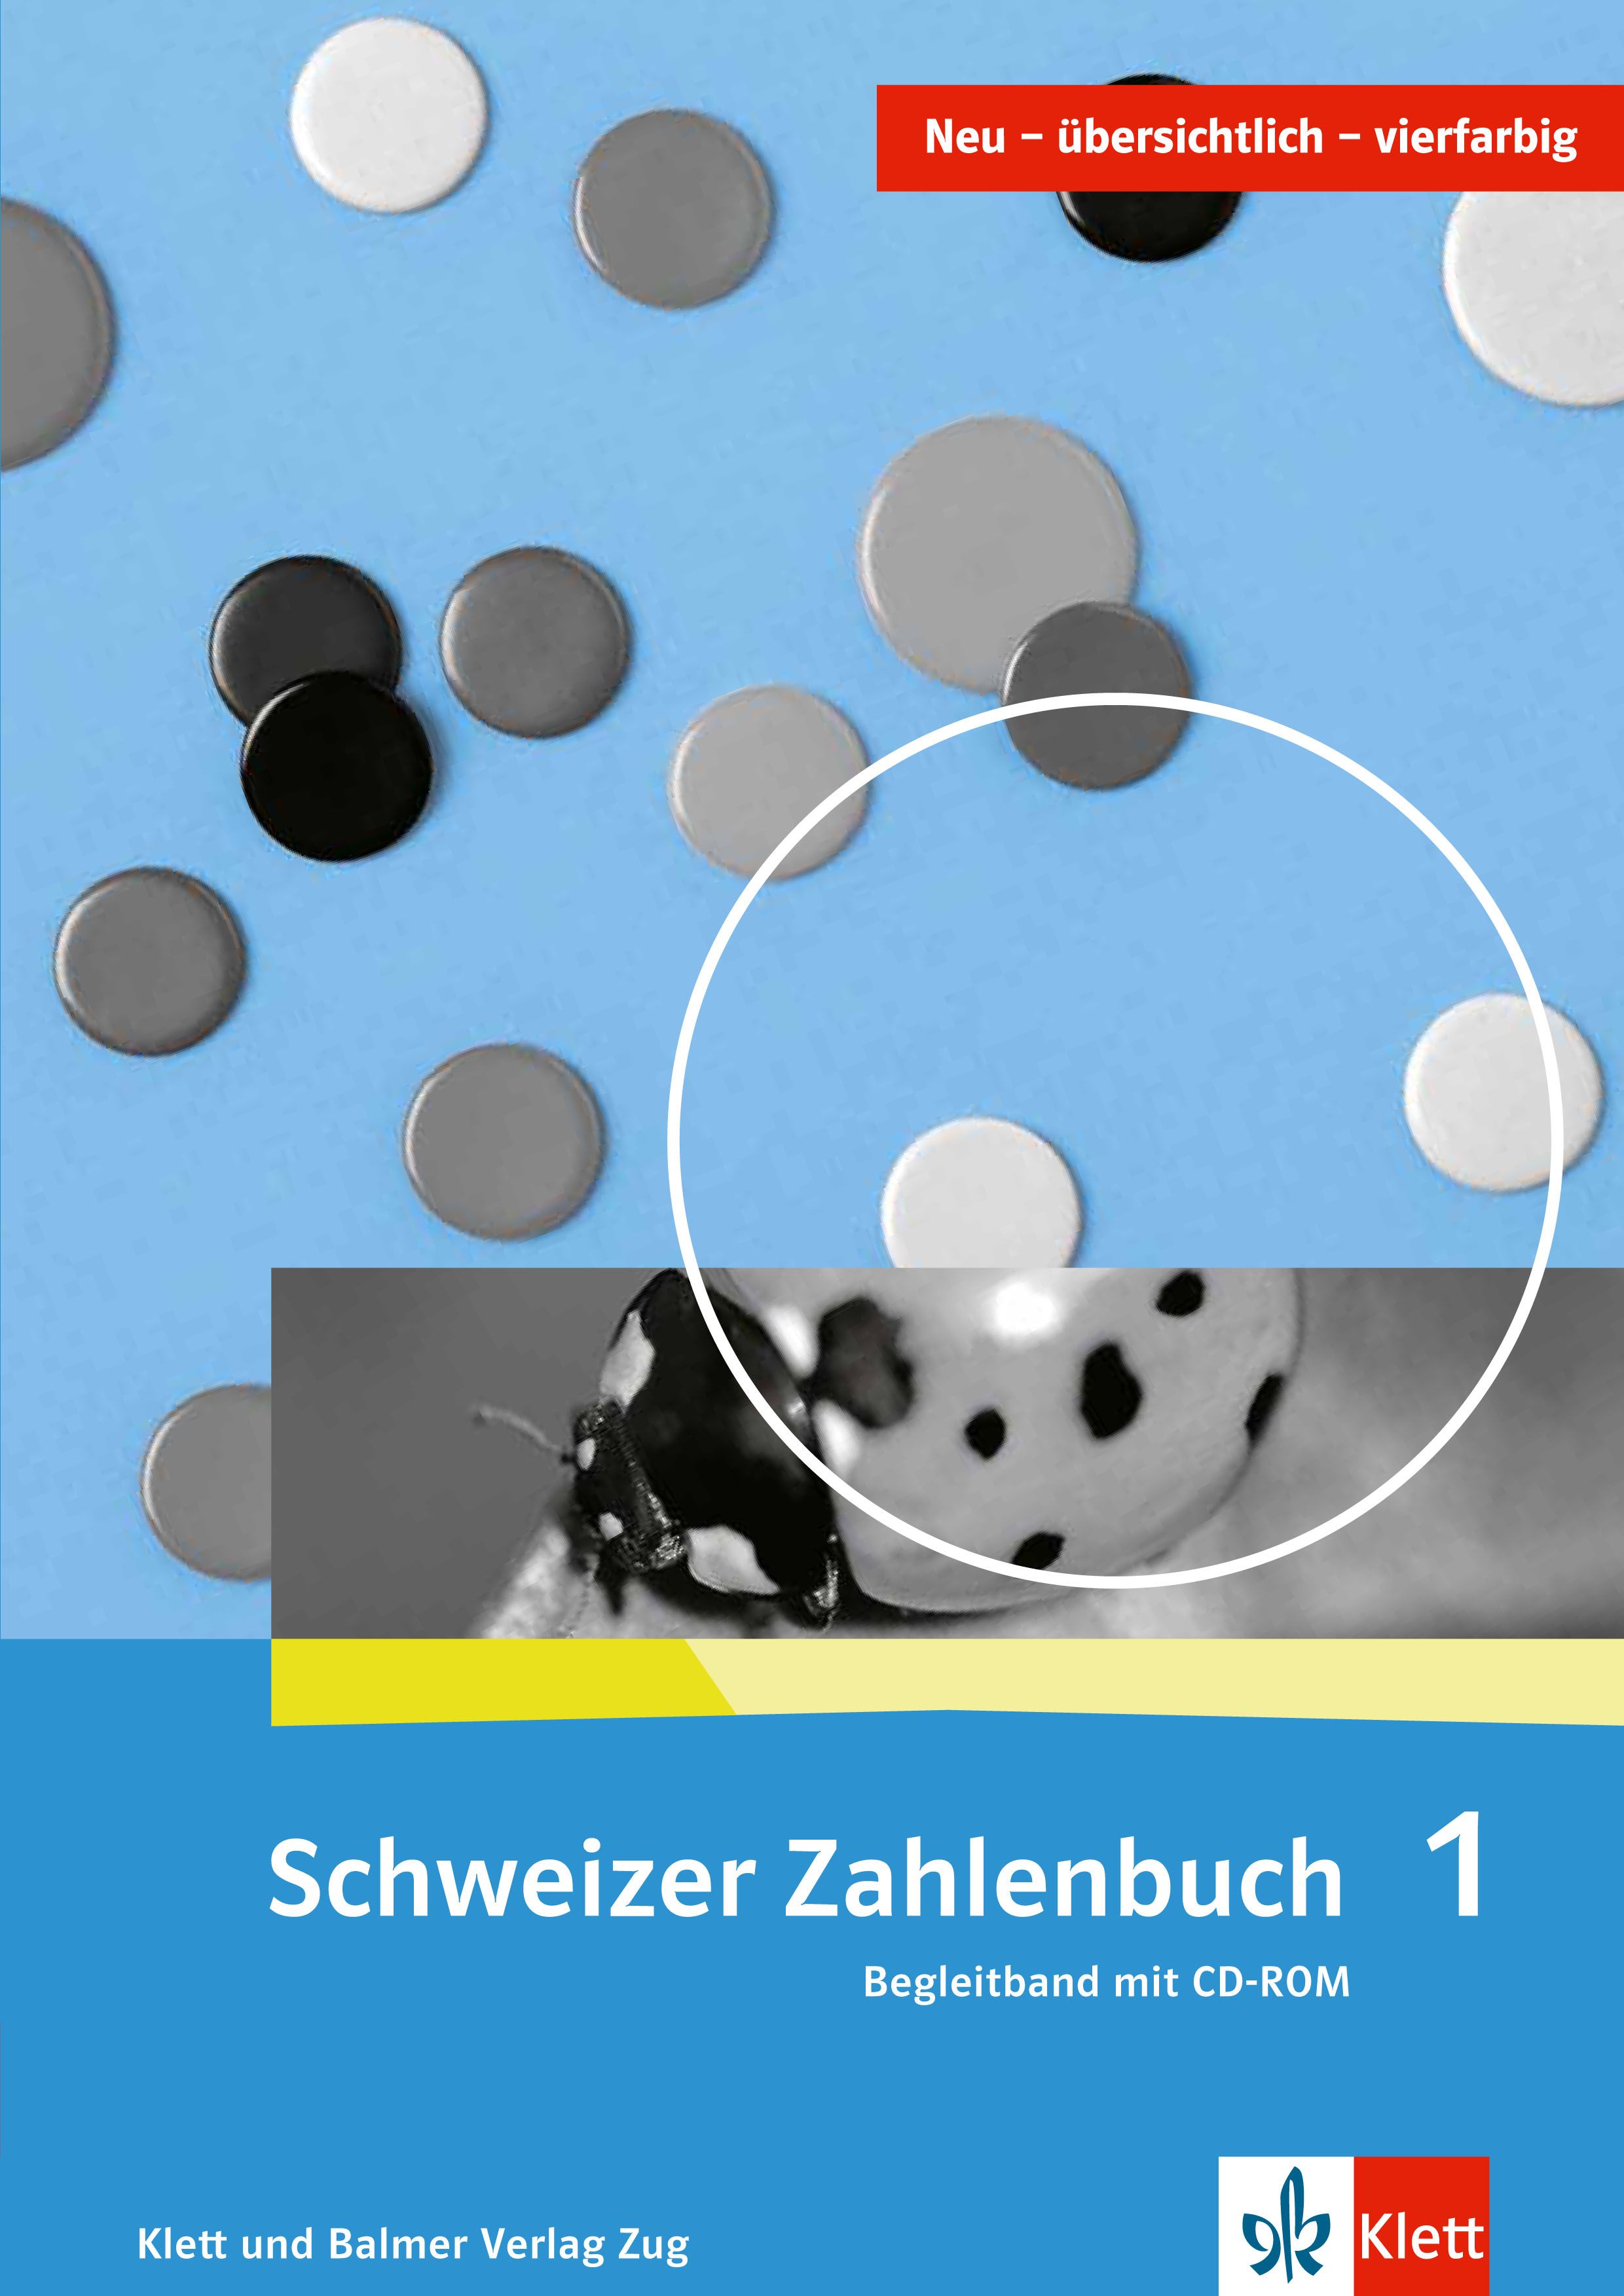 Schweizer Zahlenbuch 1, Begleitband inkl. CD-ROM, ALTE VERSION! SPEZIALBEST.